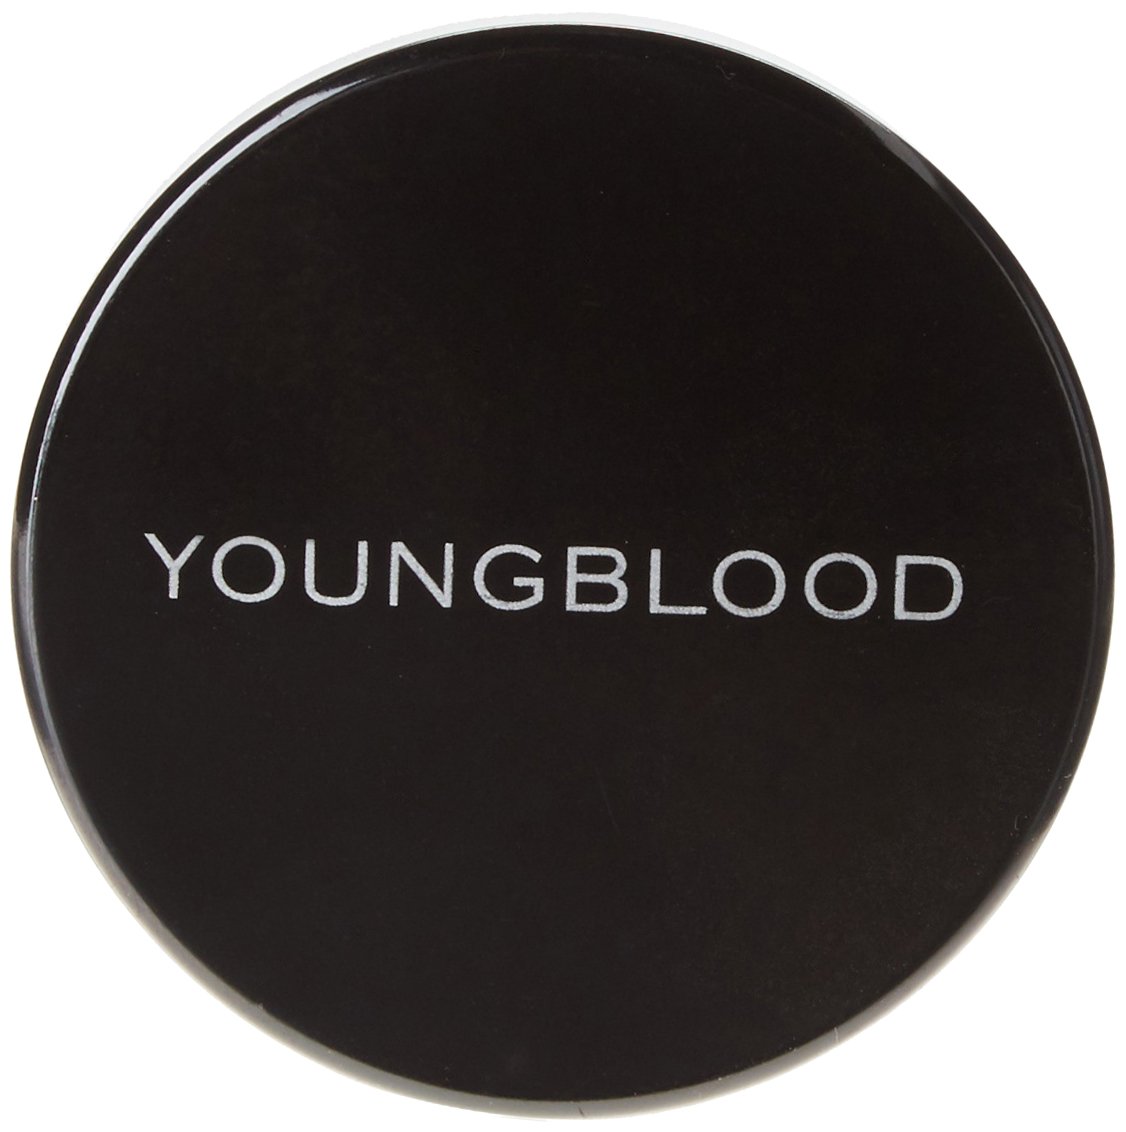 Youngblood Lunar Dust Face Bronzer, Twilight, 8 Gram